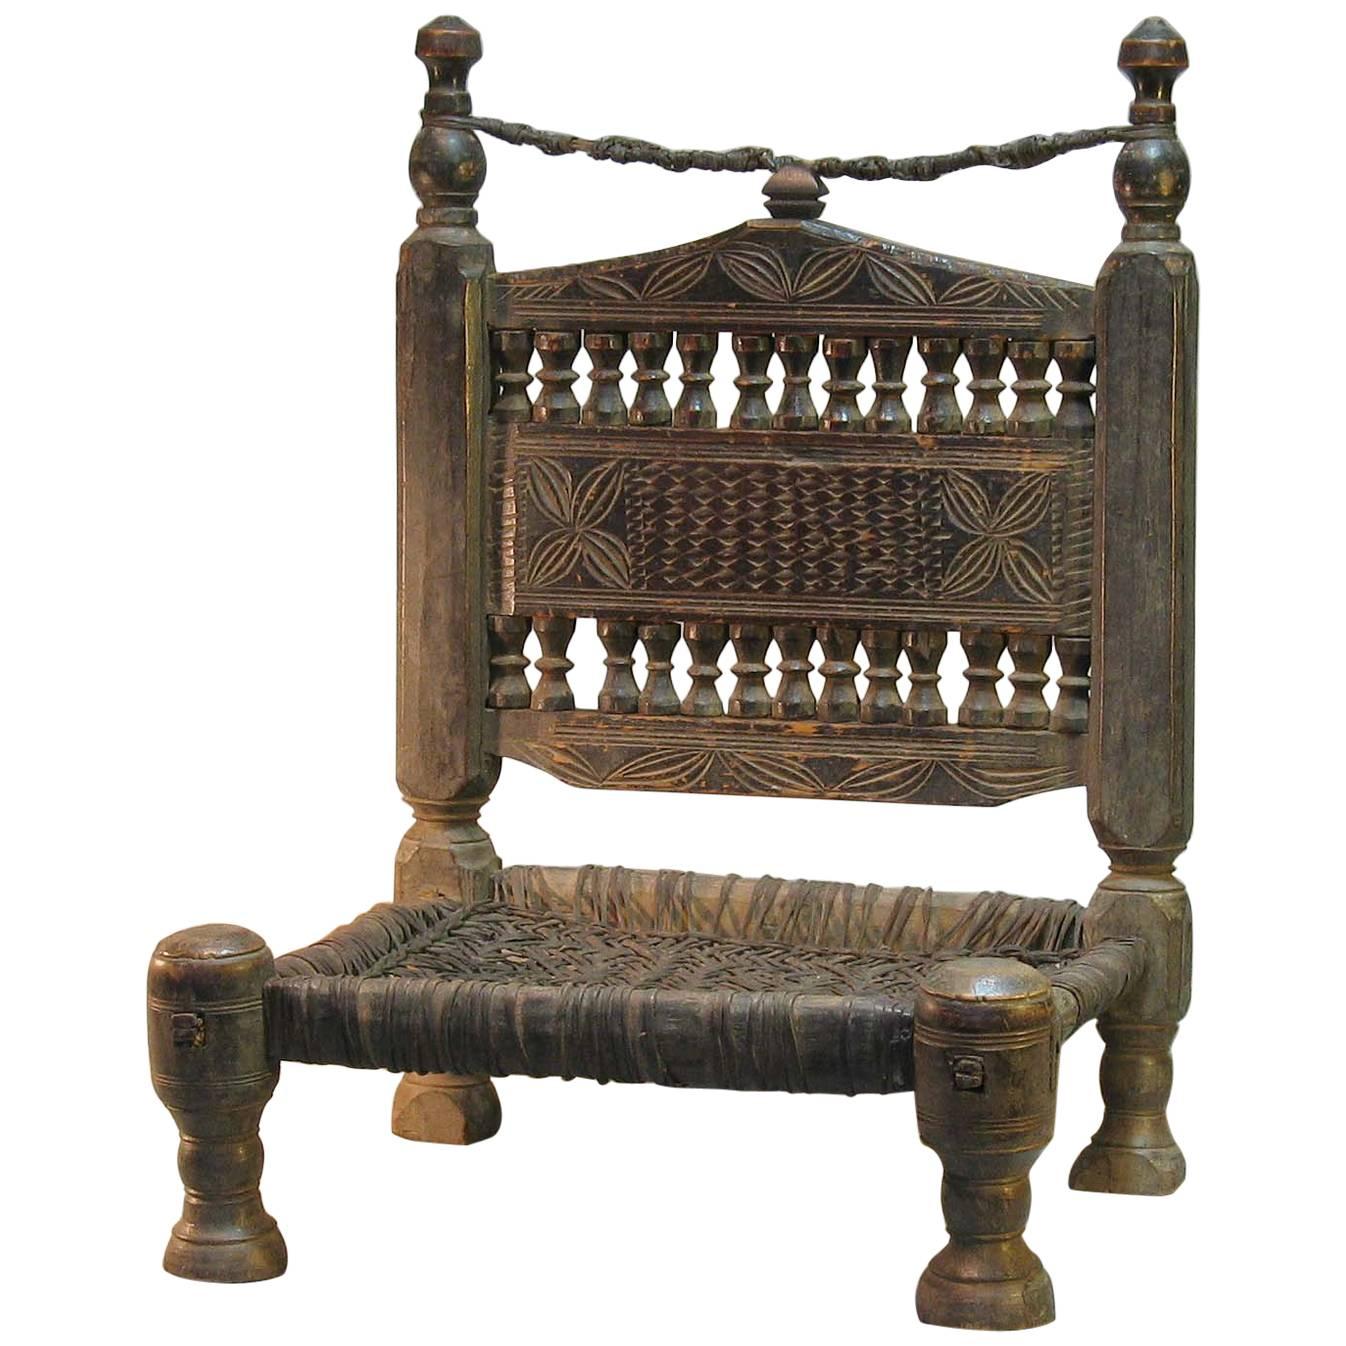 Chaise tribale traditionnelle de la vallée de la Swat, Pakistan du Nord, XIXe siècle